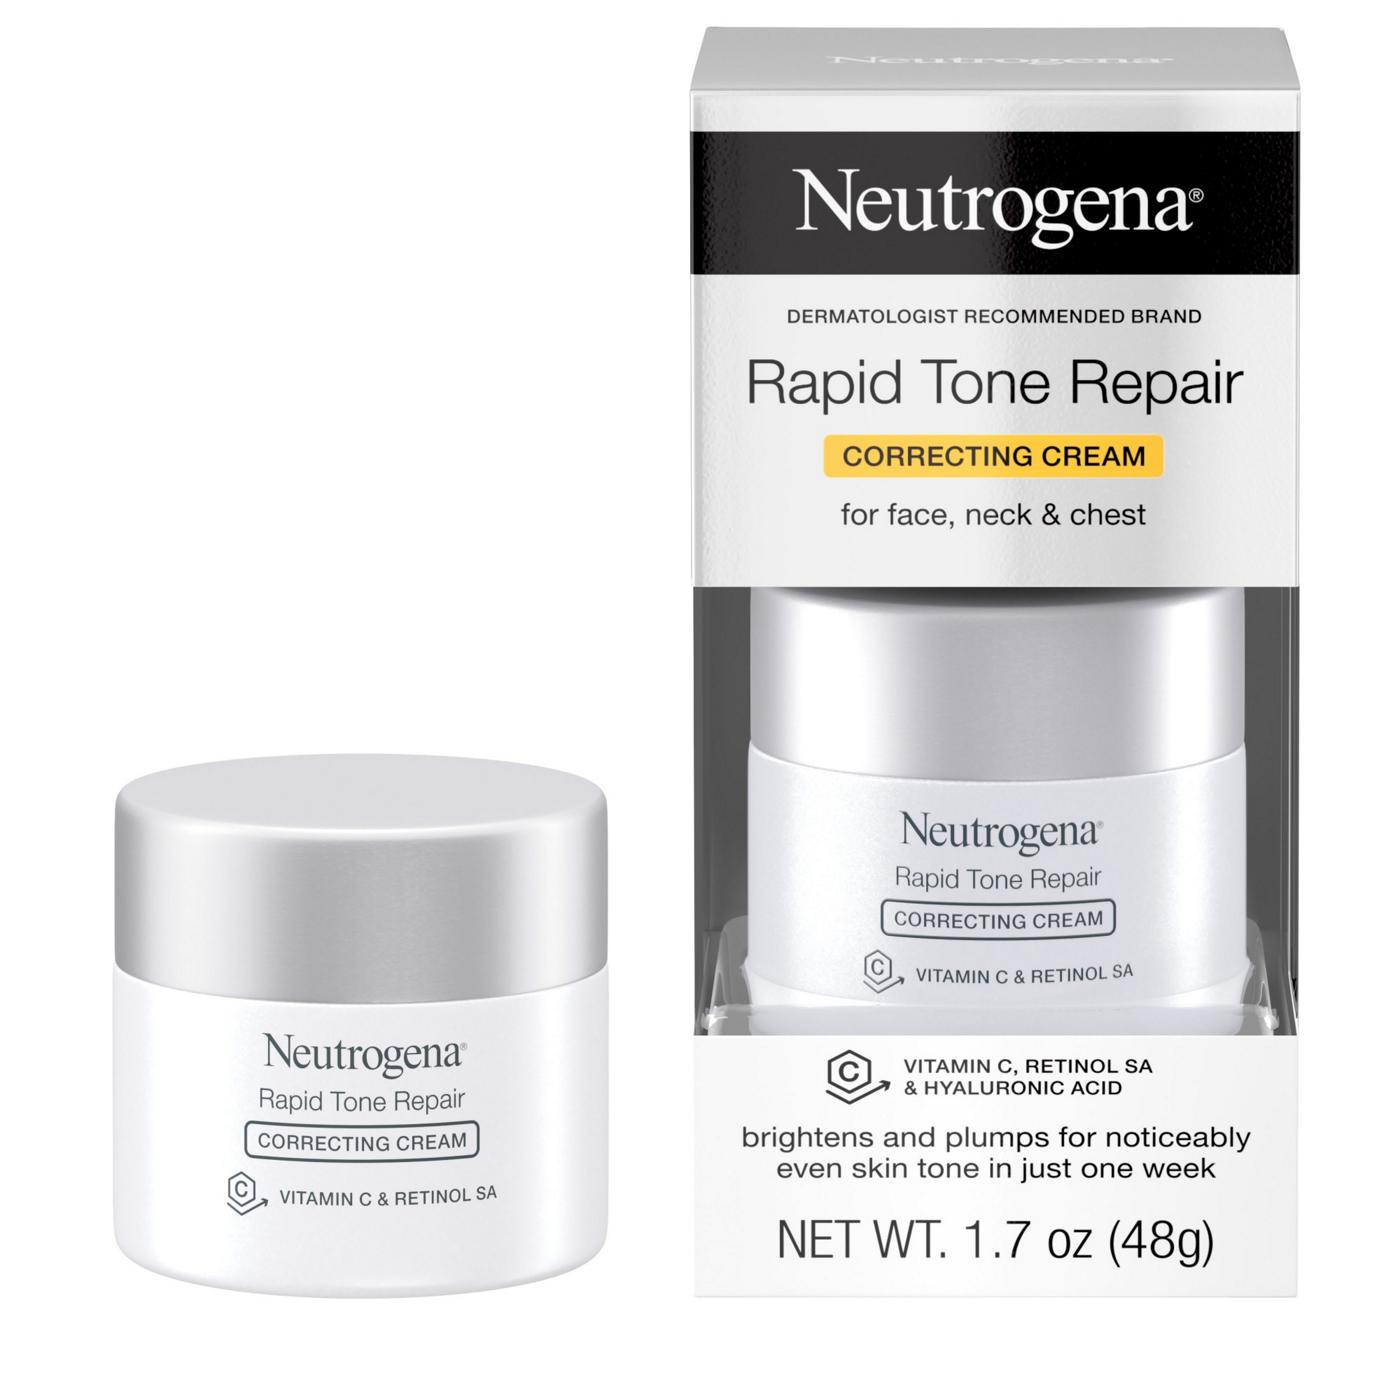 Neutrogena Rapid Tone Repair Retinol + Vitamin C Correcting Cream; image 5 of 8